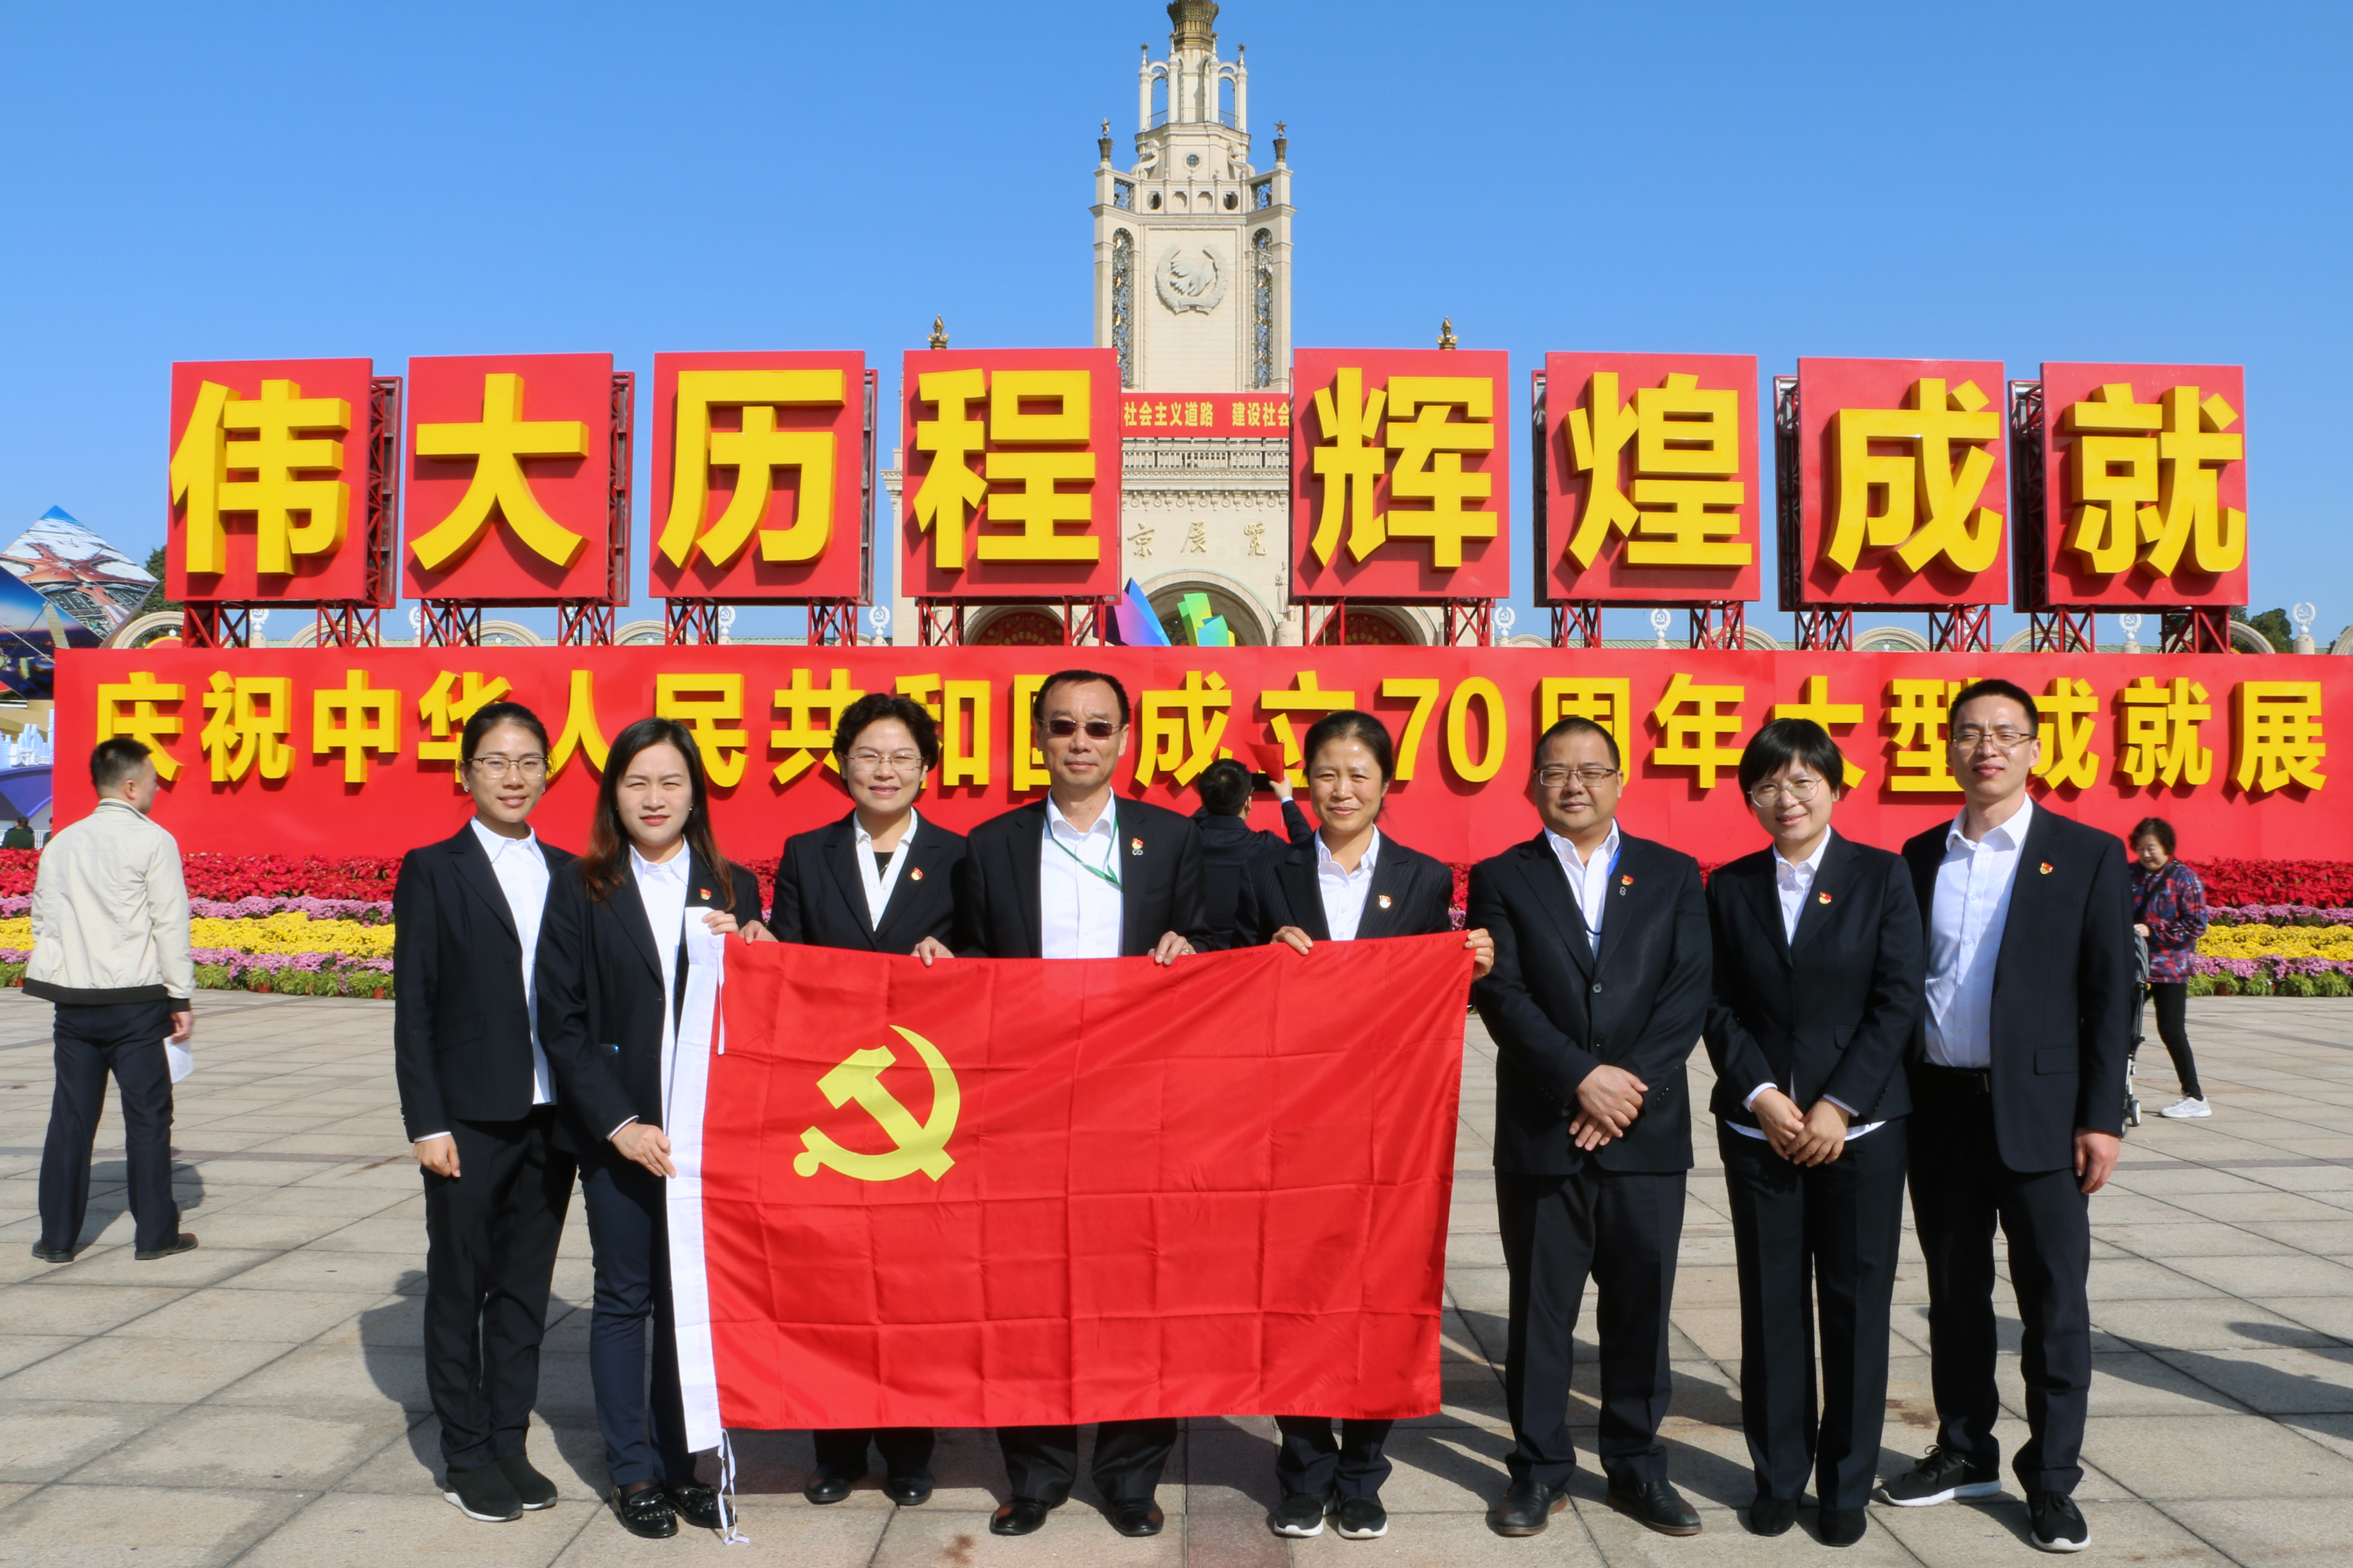 风电公司党委组织在京党员干部参观 “伟大历程、辉煌成就”庆祝建国70周年大型成就展